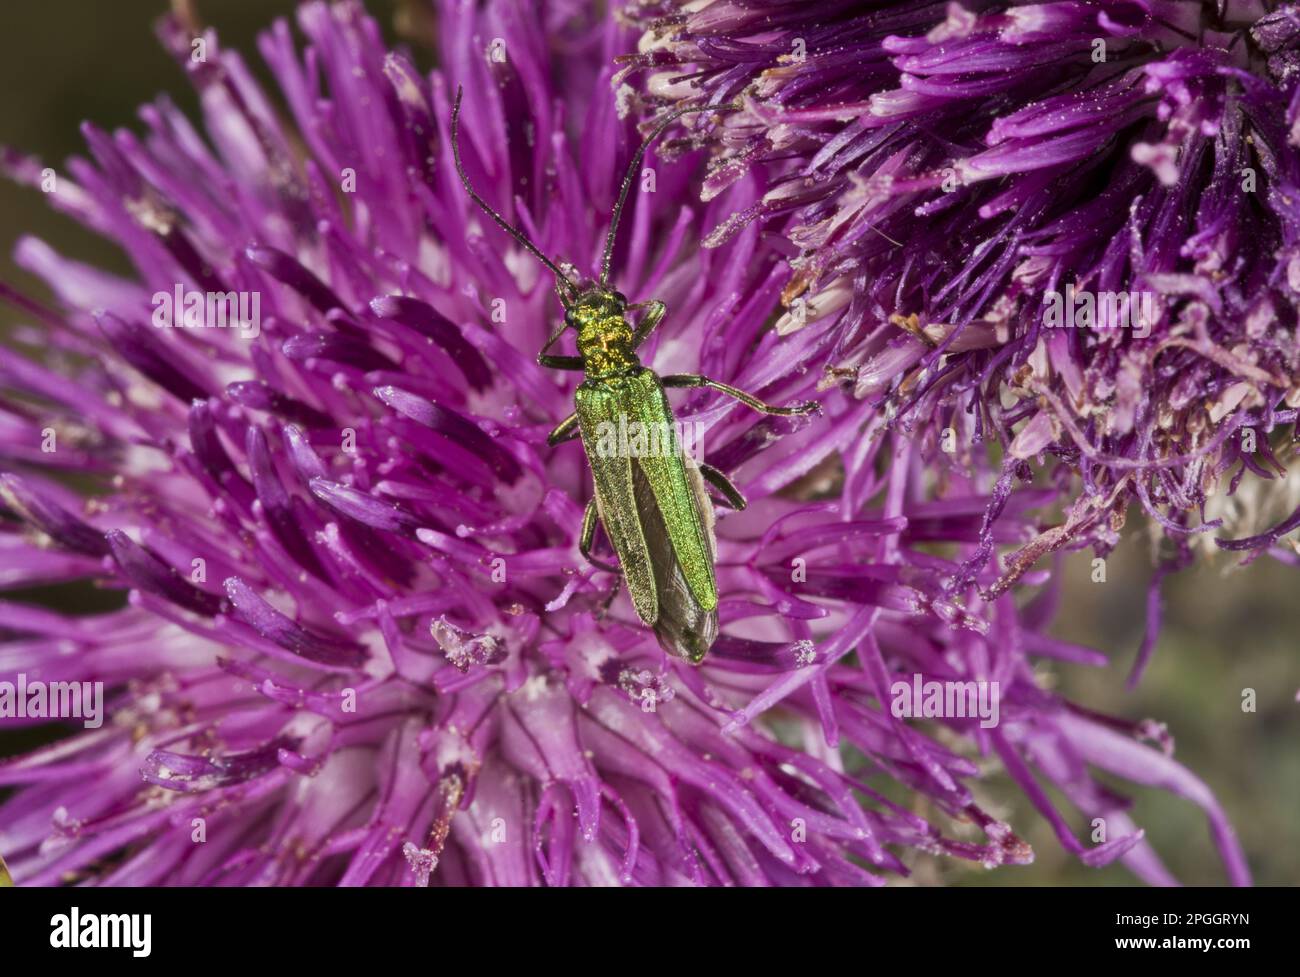 Escarabajo verde de la flor falsa, escarabajo de la flor de patas gruesas (Oedemera nobilis), escarabajo verde de la flor falsa, escarabajo azul-verde del muslo, otros animales, insectos Foto de stock